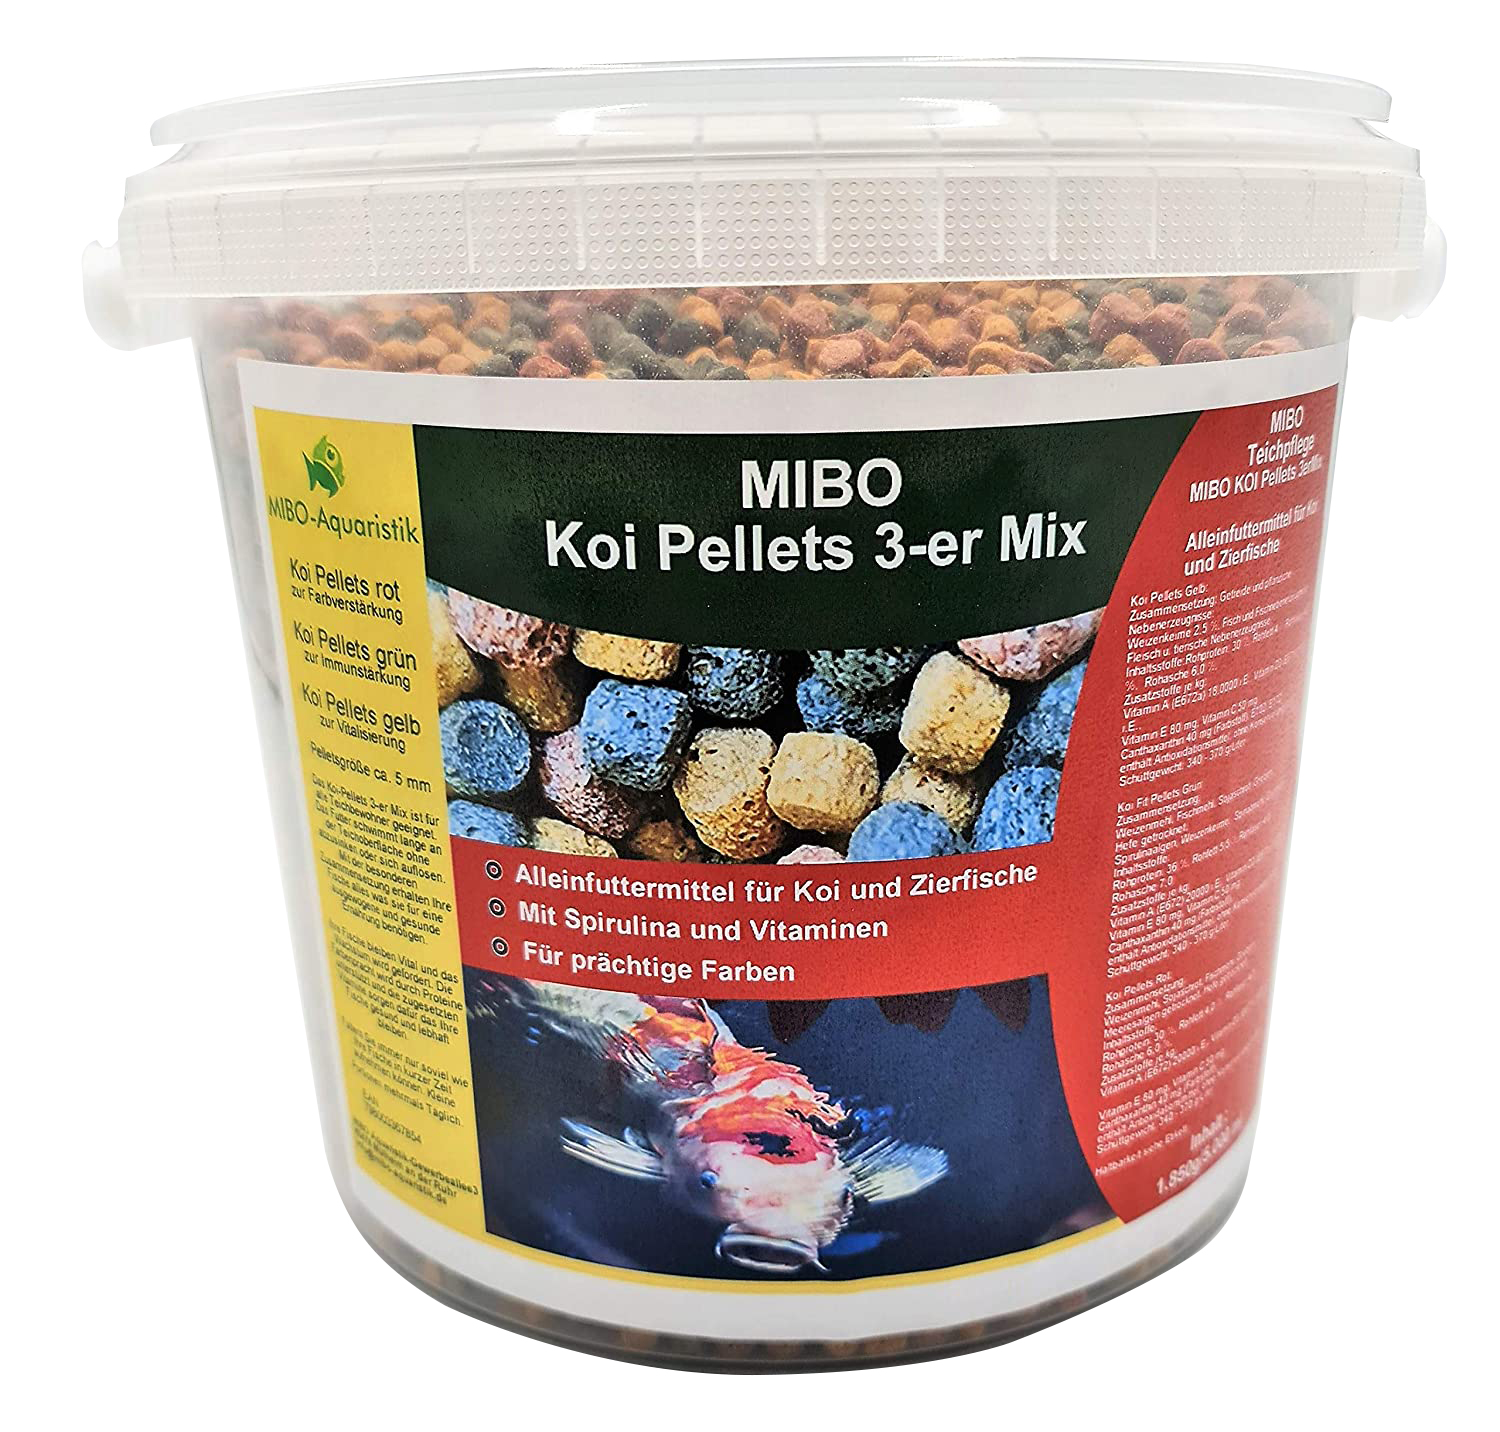 MIBO Koi Pellets 3-er Mix 5 Liter Eimer/ 1850g